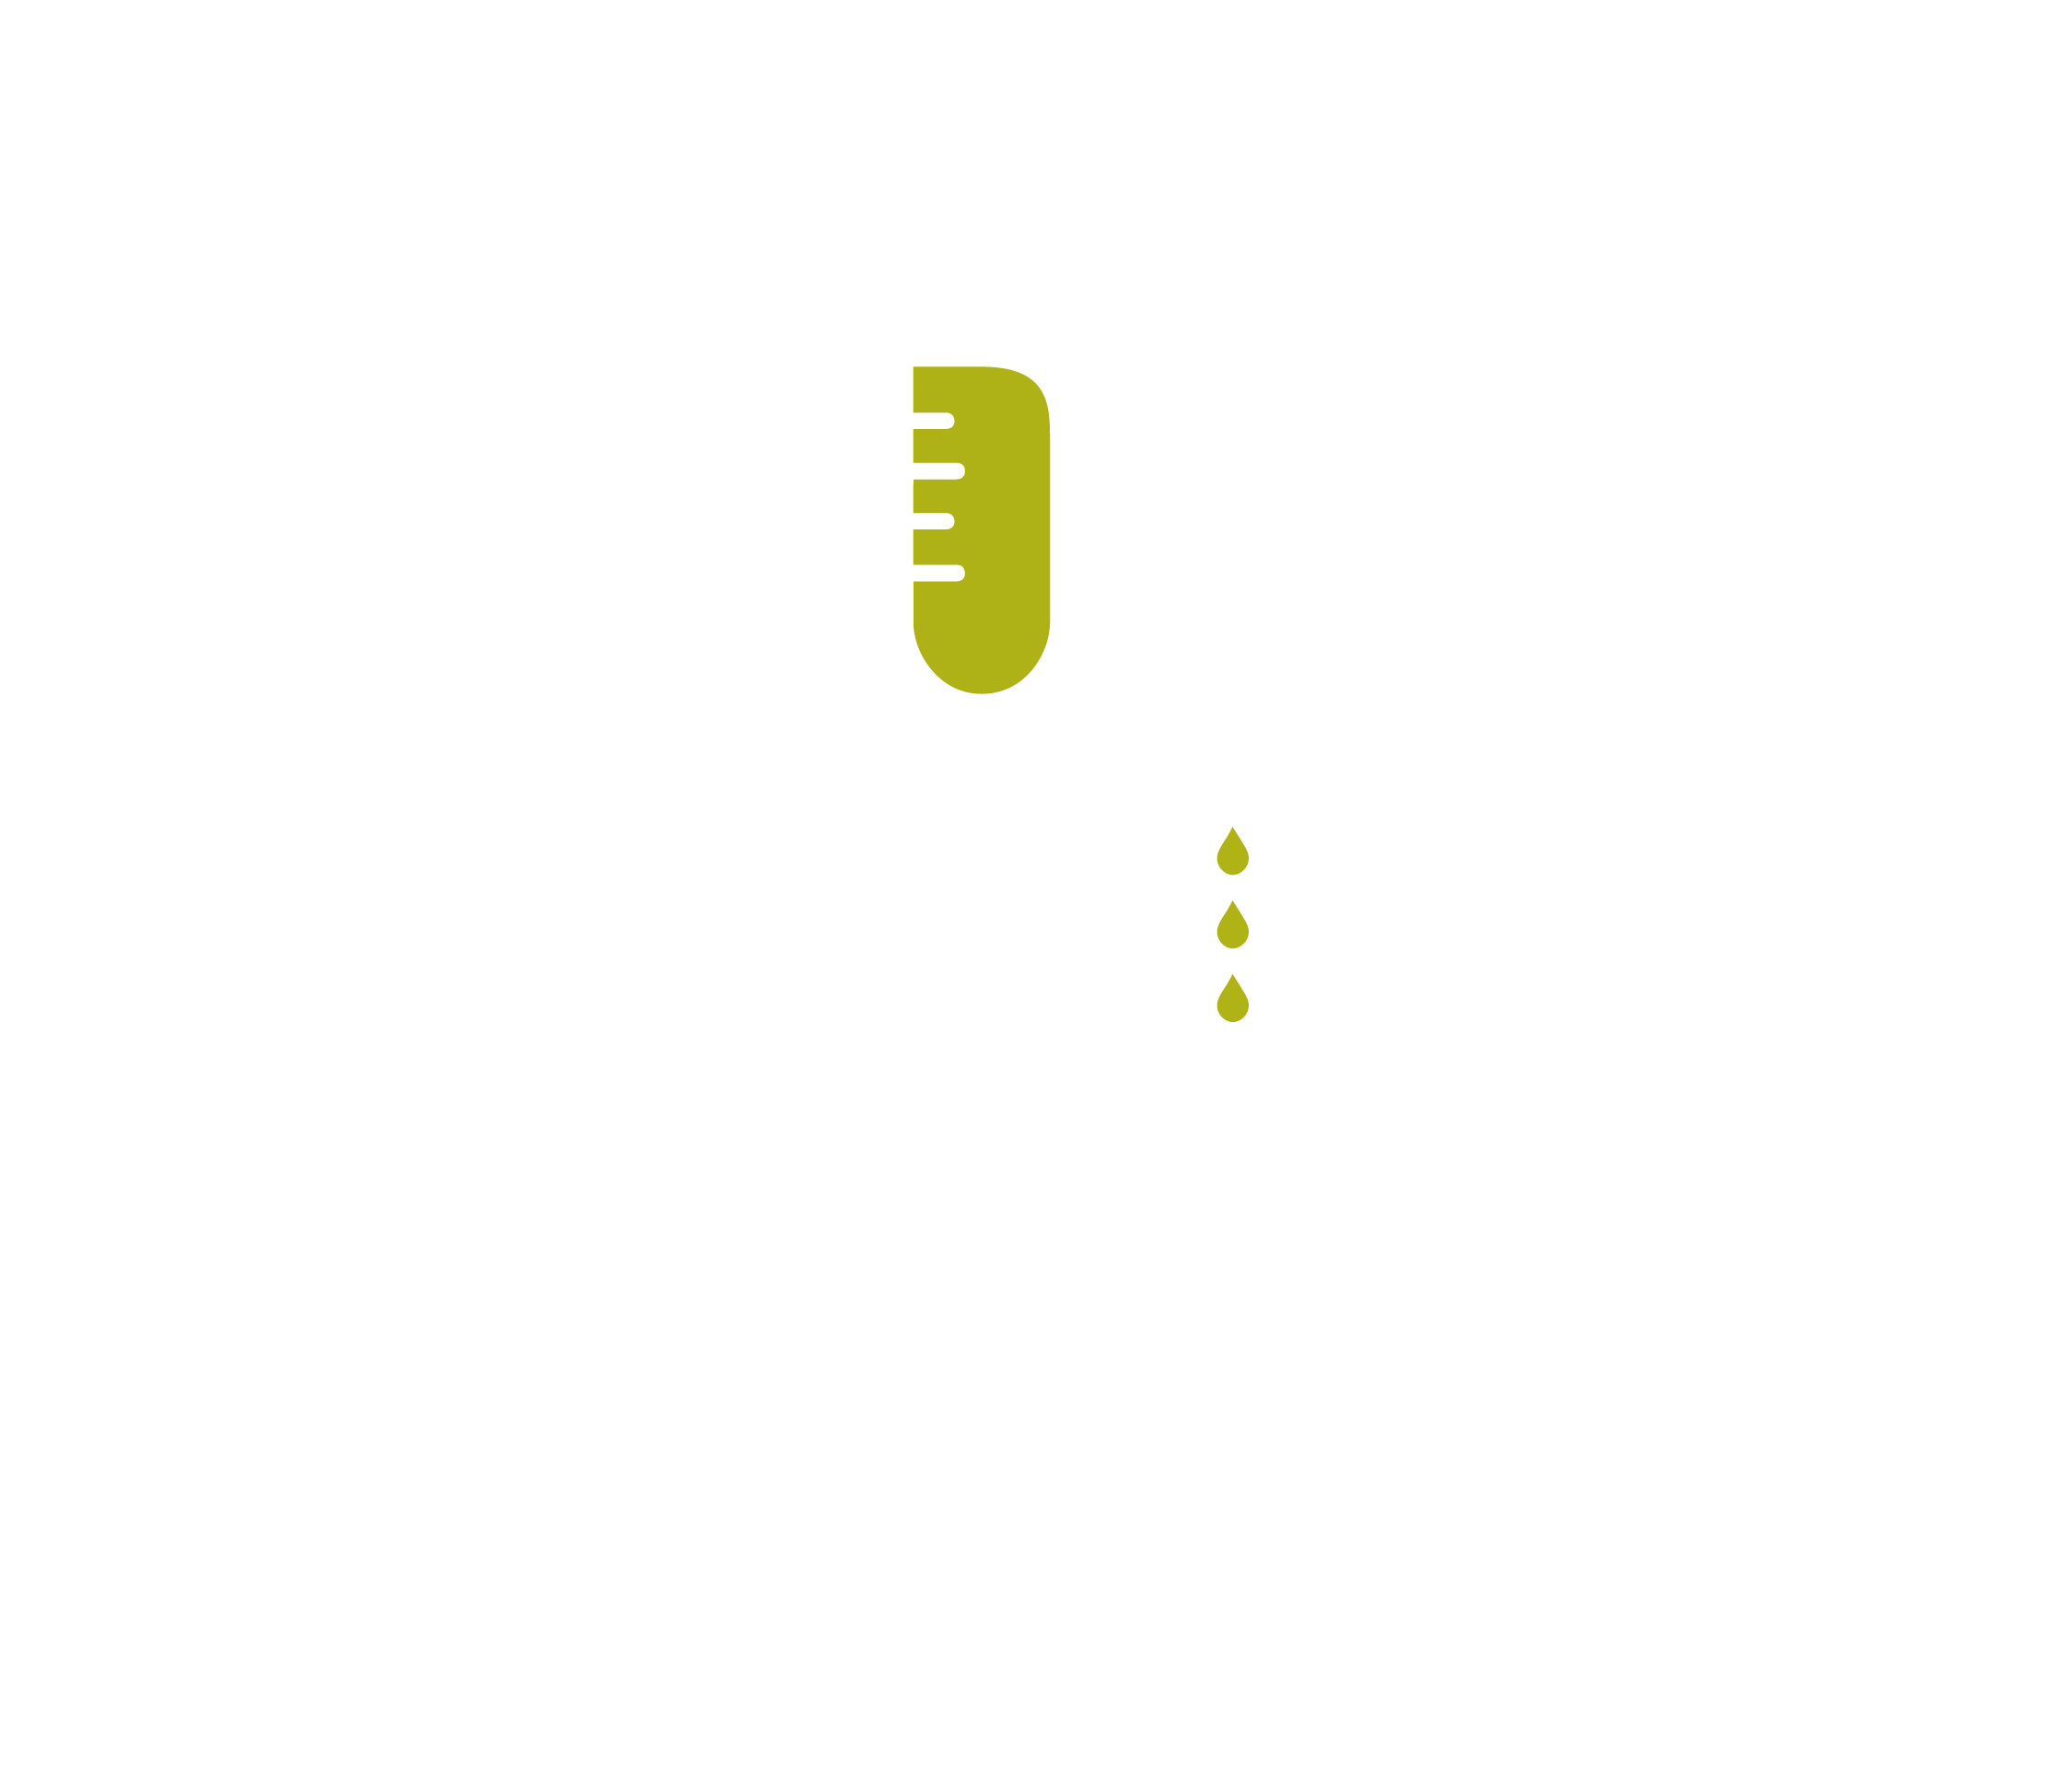 The DRIPBaR Edina